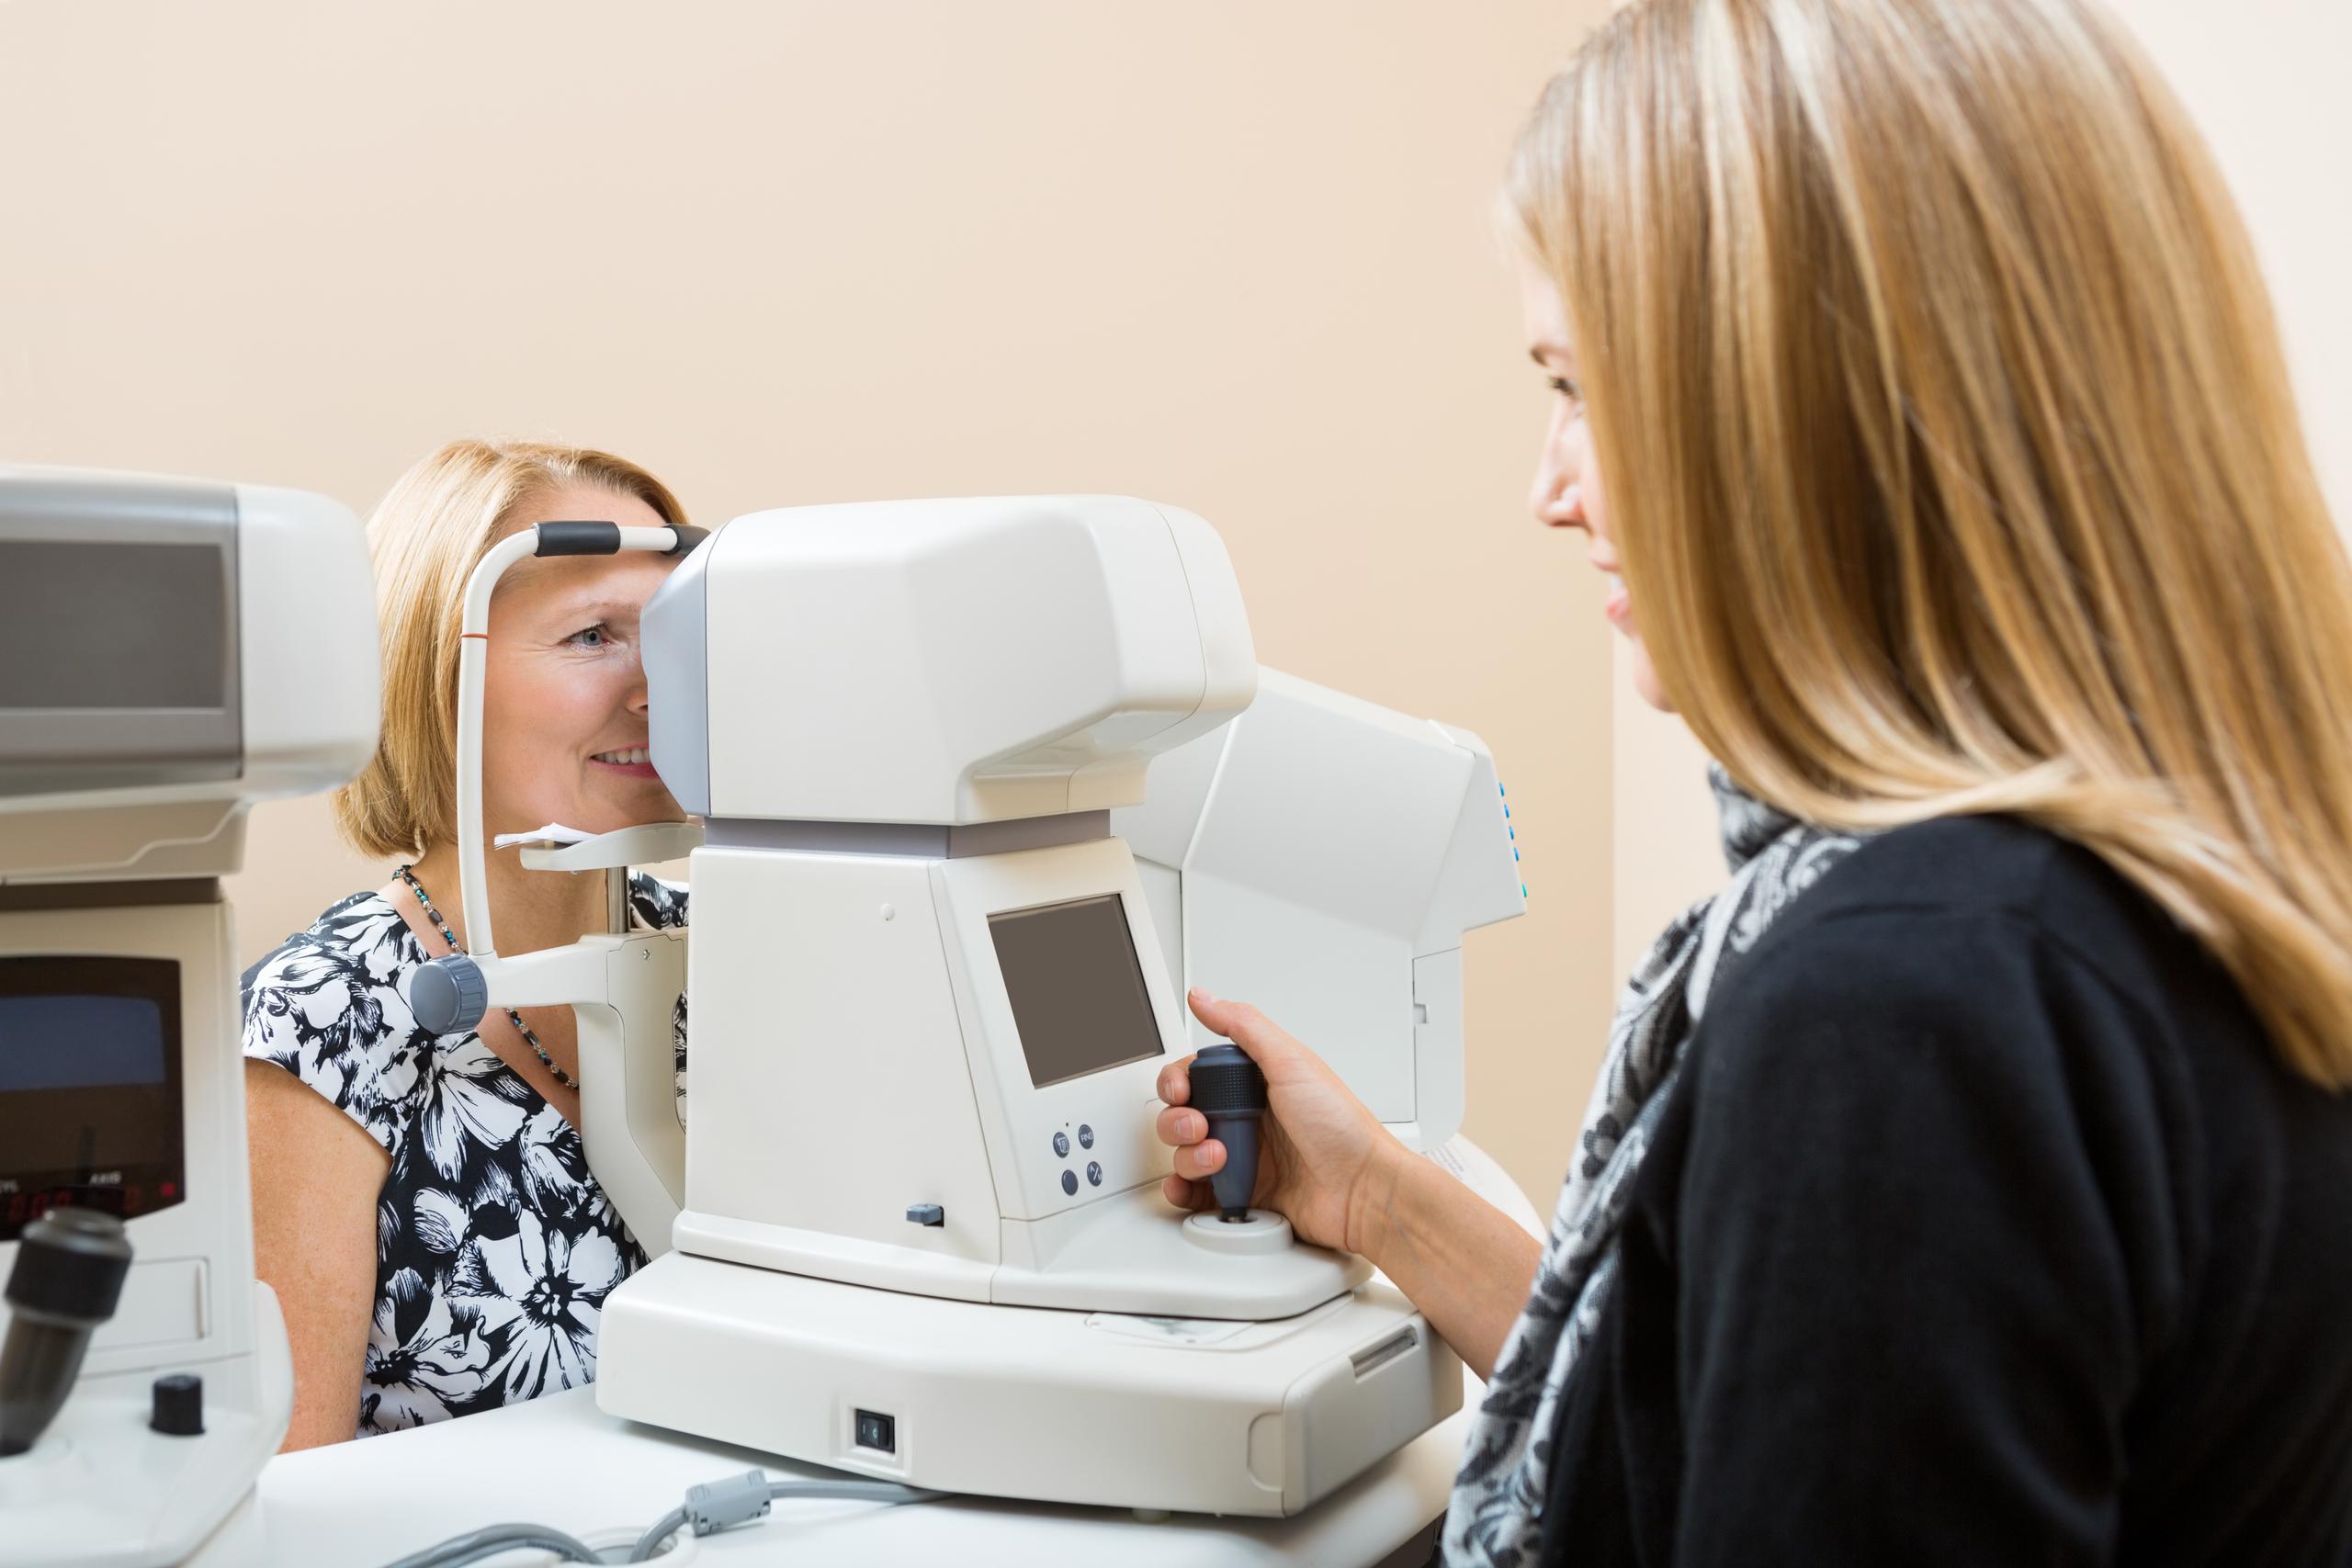 A partir de los 40 años, la incidencia de glaucoma y degeneración macular empieza a aumentar a niveles significativos, por lo que el examen visual es necesario.